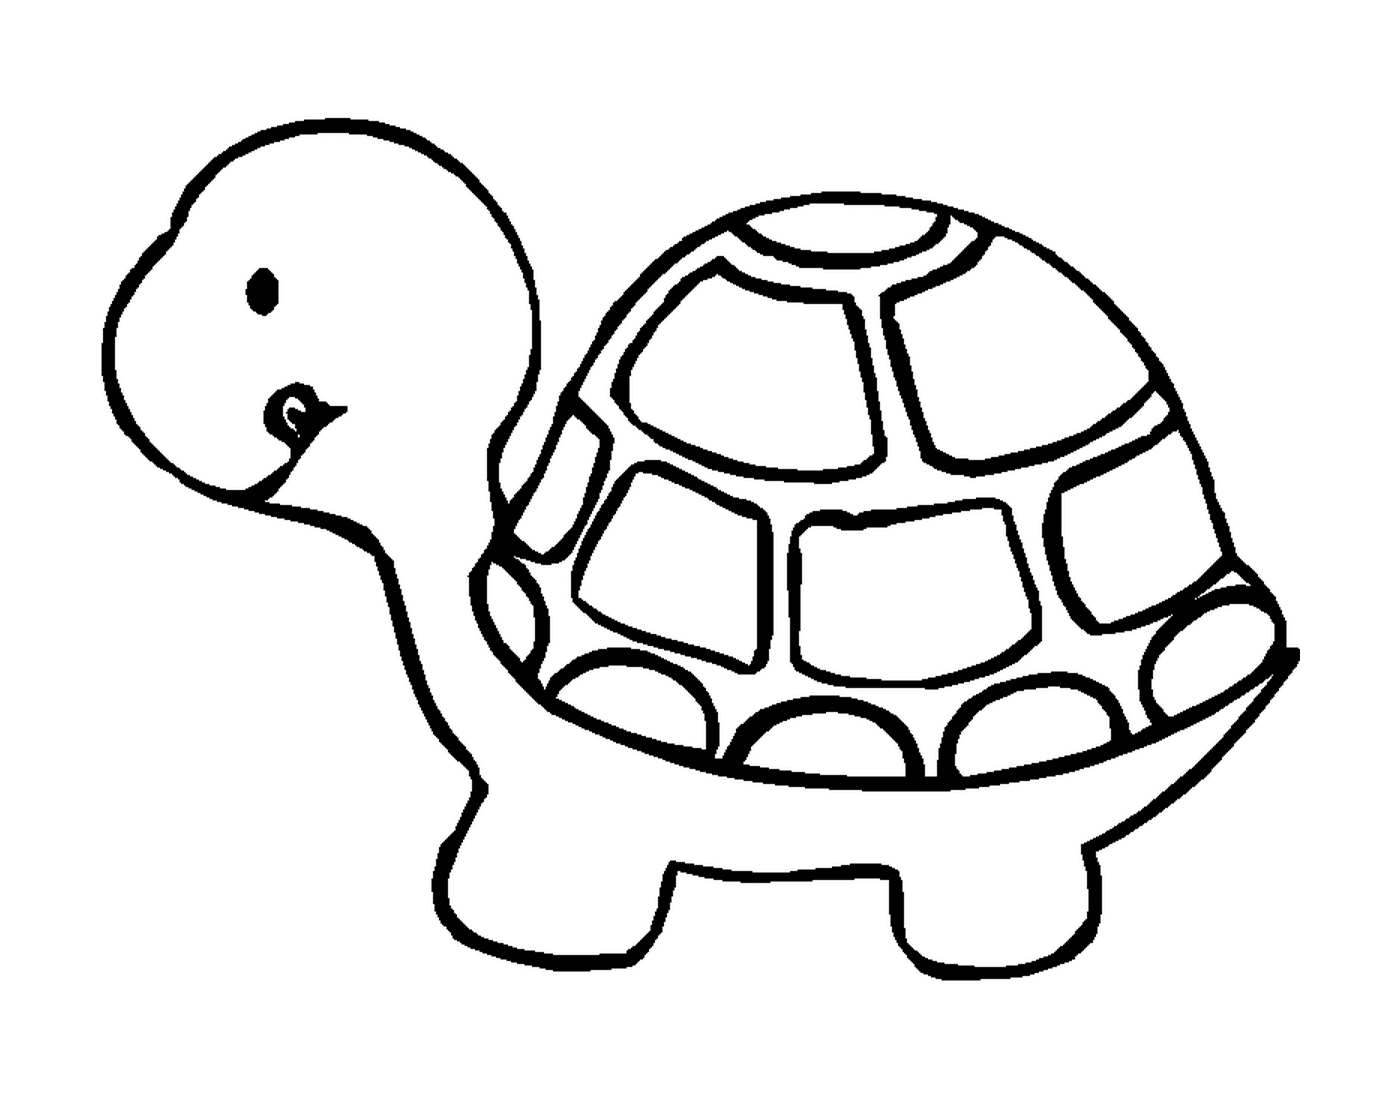  Una tortuga de perfil 